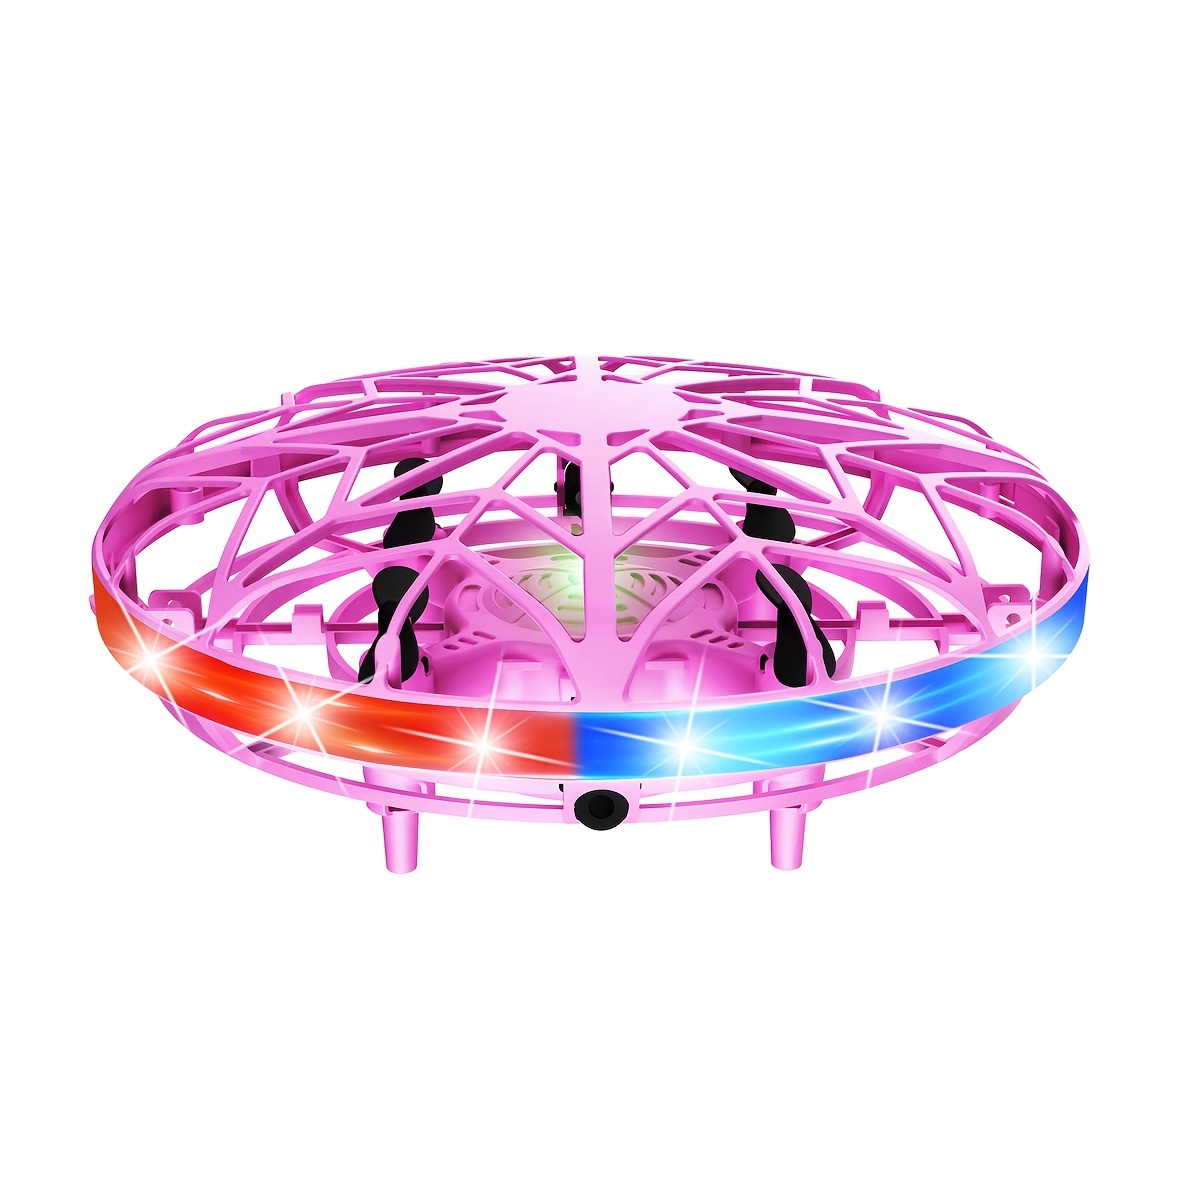 Bola voladora giratoria de inducción con luz LED Boomerang, juego